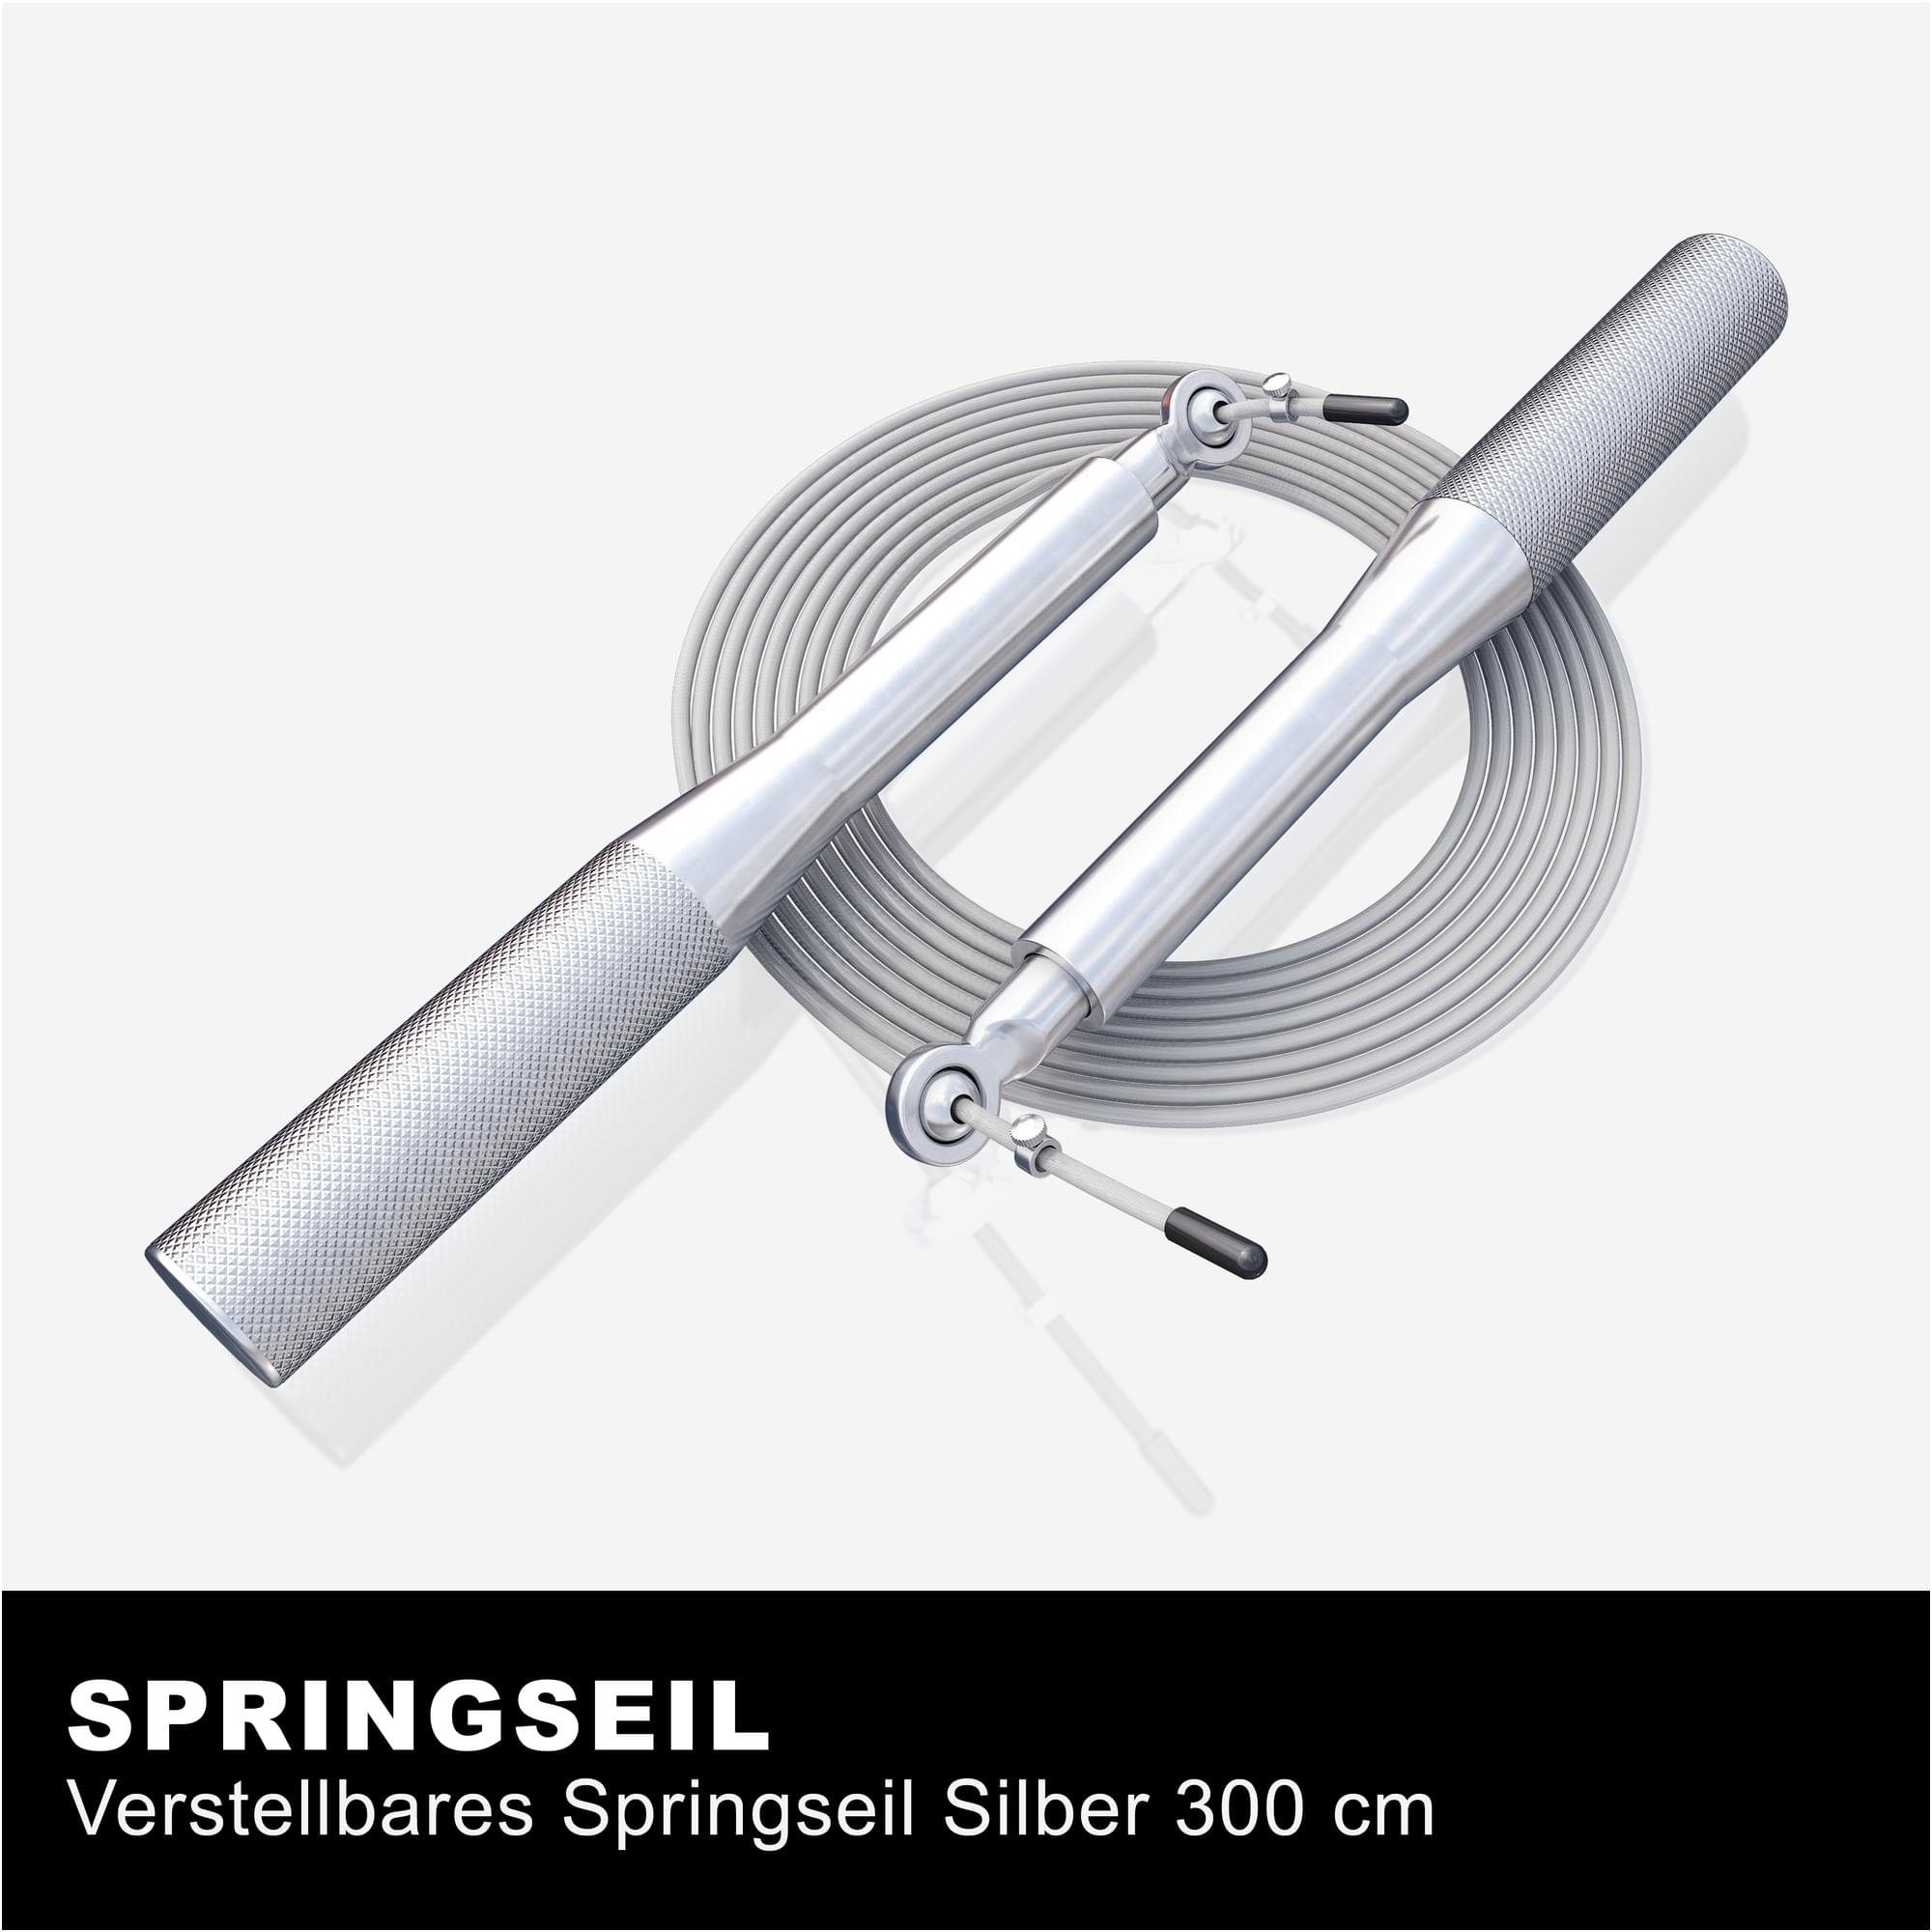 Springseil 3m, Speed Rutschfeste Jump, Skipping, Rope SPORTS Verstellbar, - GORILLA Sprungseil - Silber